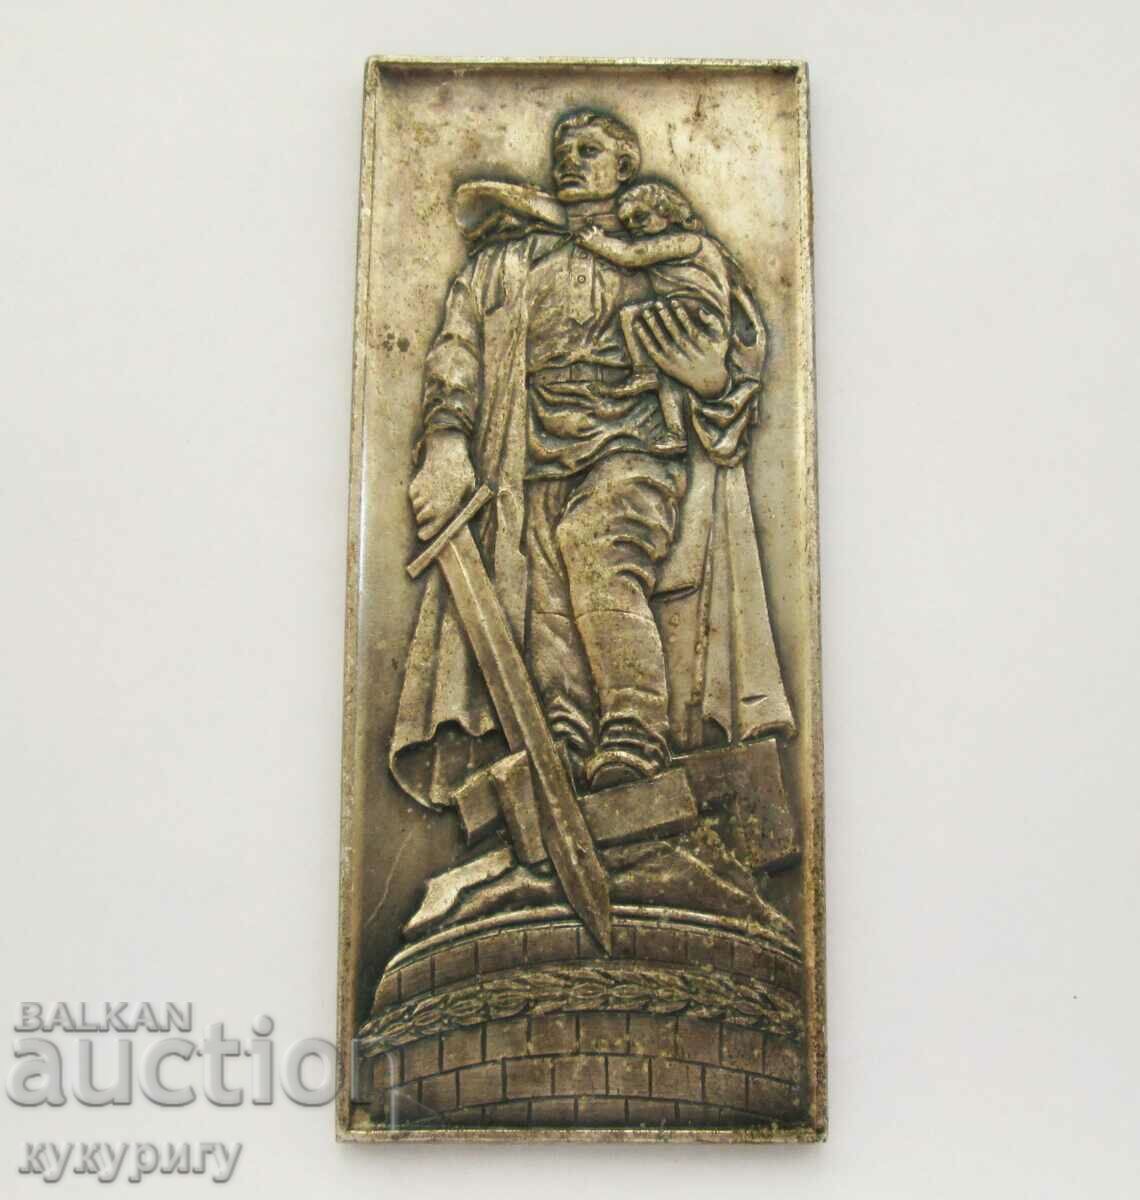 Old World War II desktop medal plaque